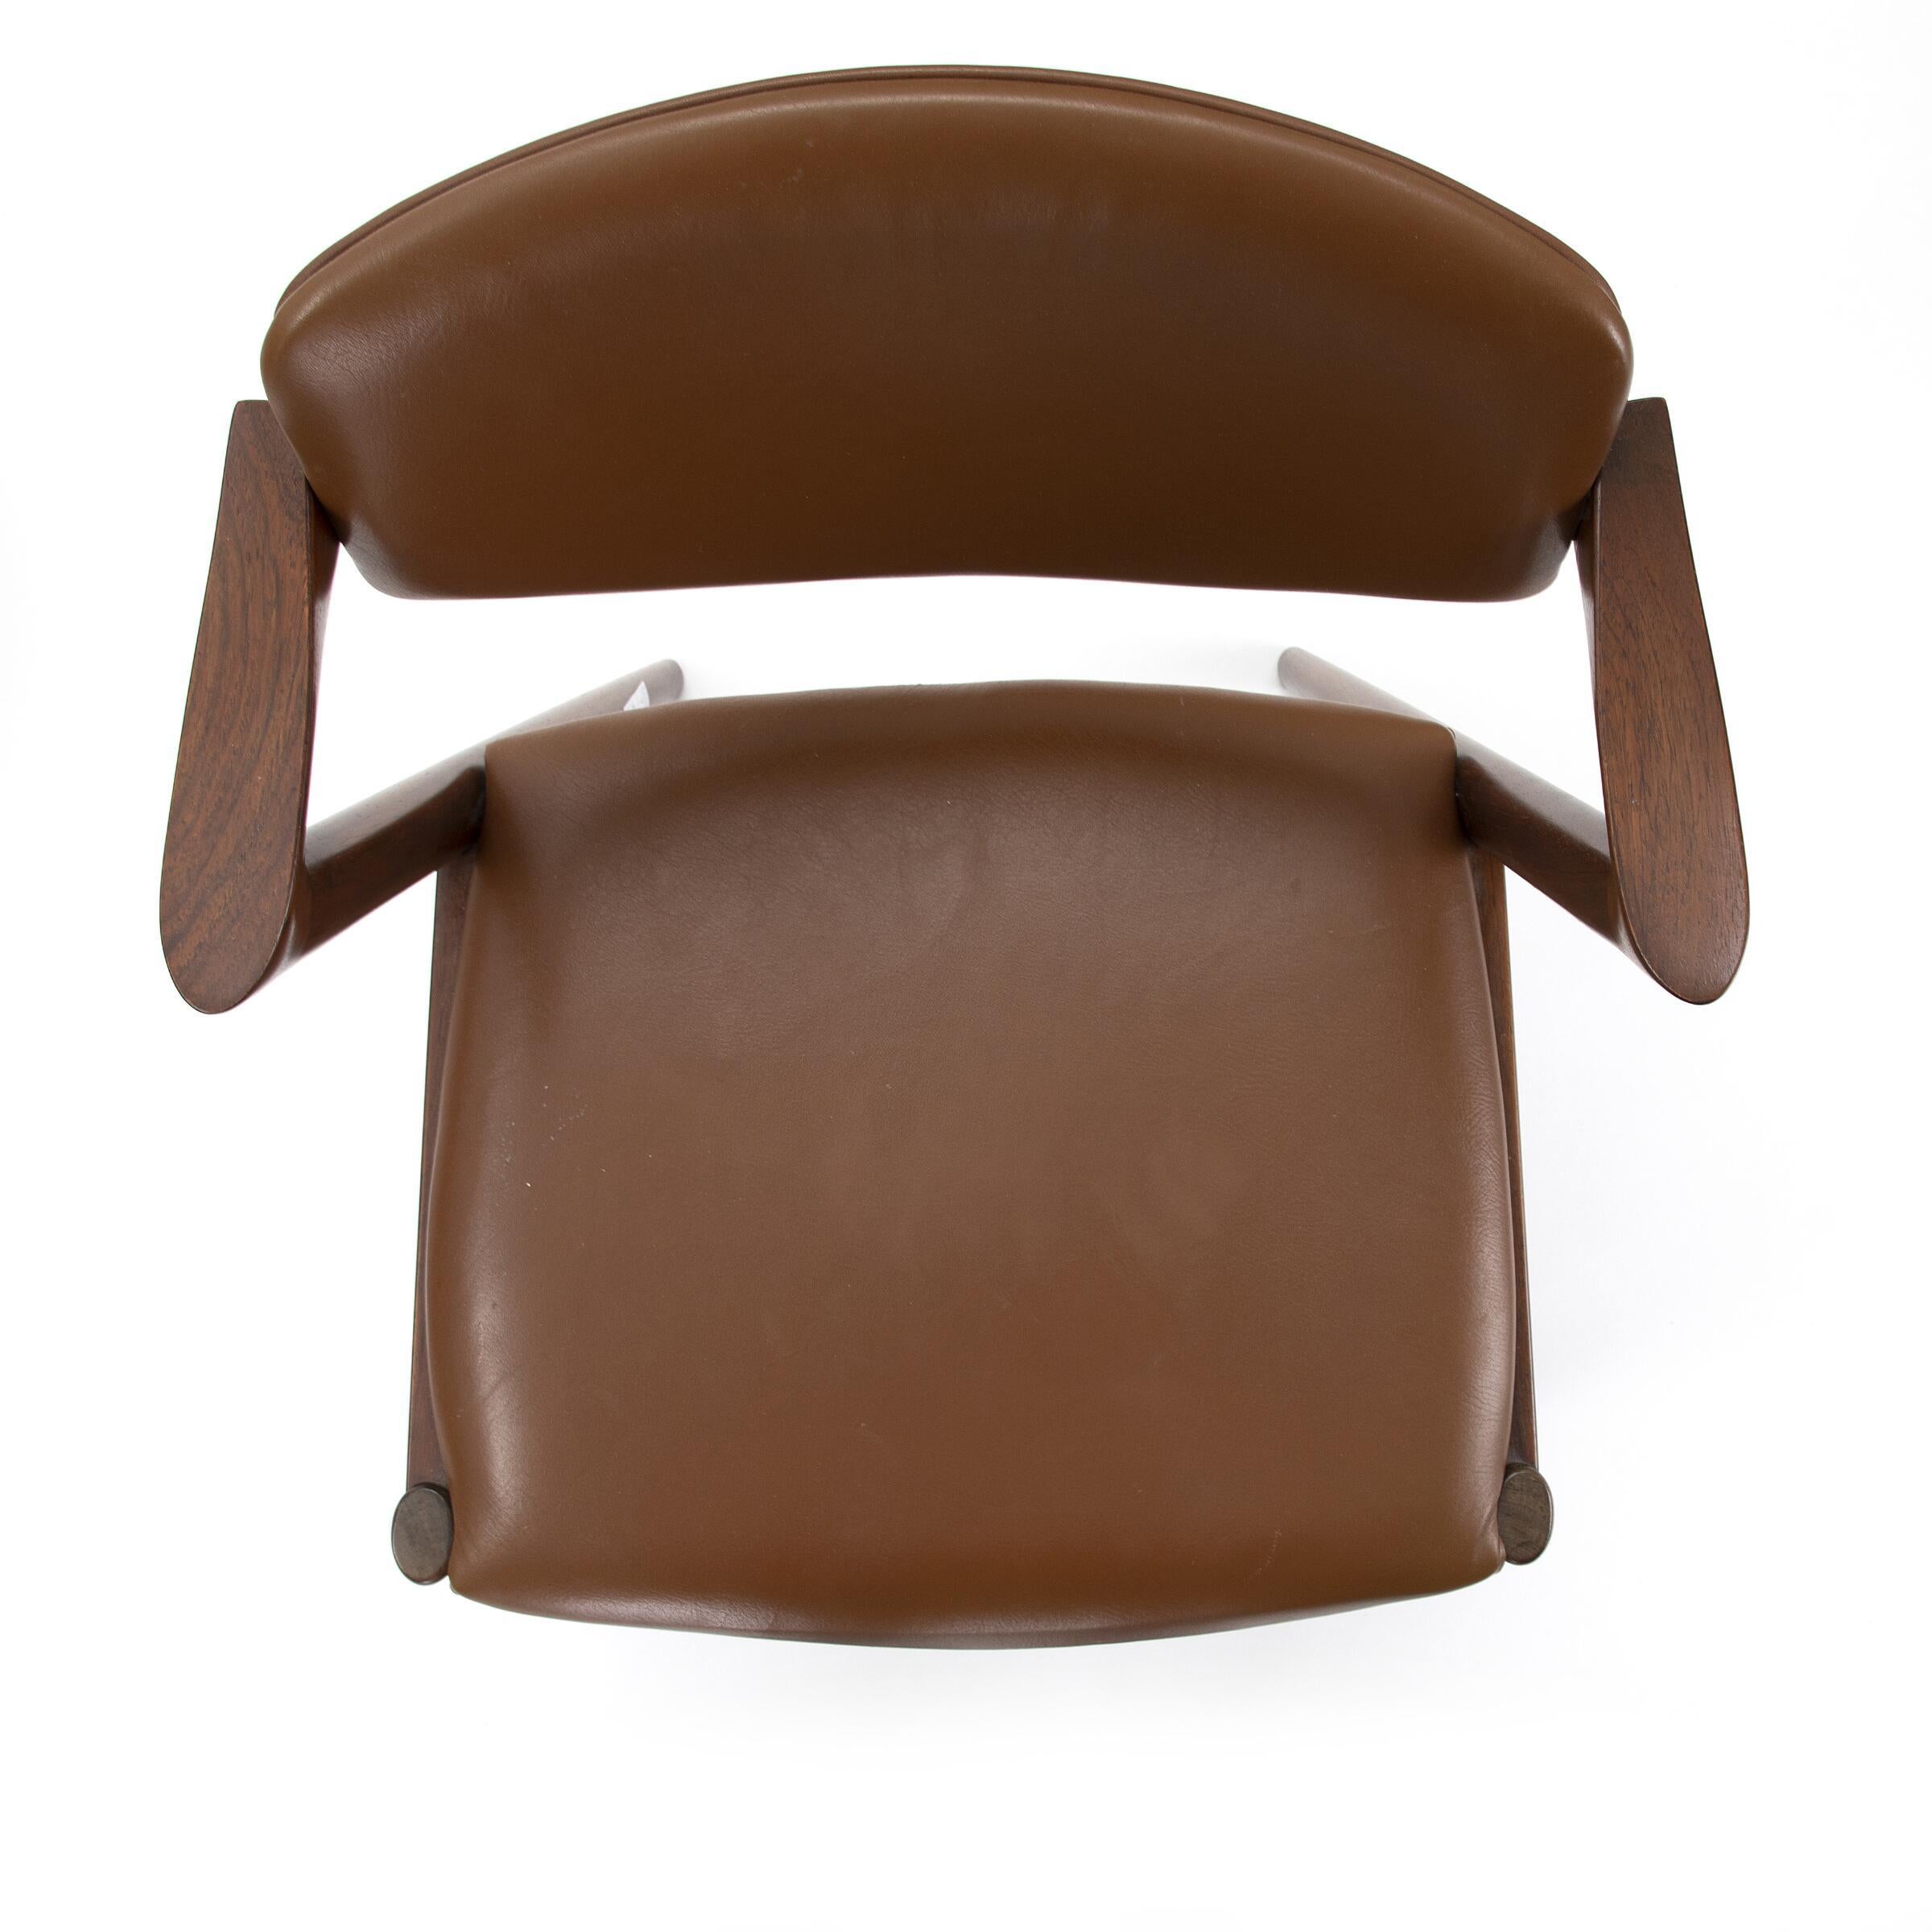 Ensemble de six fauteuils en bois de rose de KAI KRISTIANSEN, dont l'assise et le dossier sont recouverts de cuir brun. Modèle 42.

Fabriqué par Schou Andersen Furniture

Présenté au 18e salon du meuble danois de l'Association des fabricants de